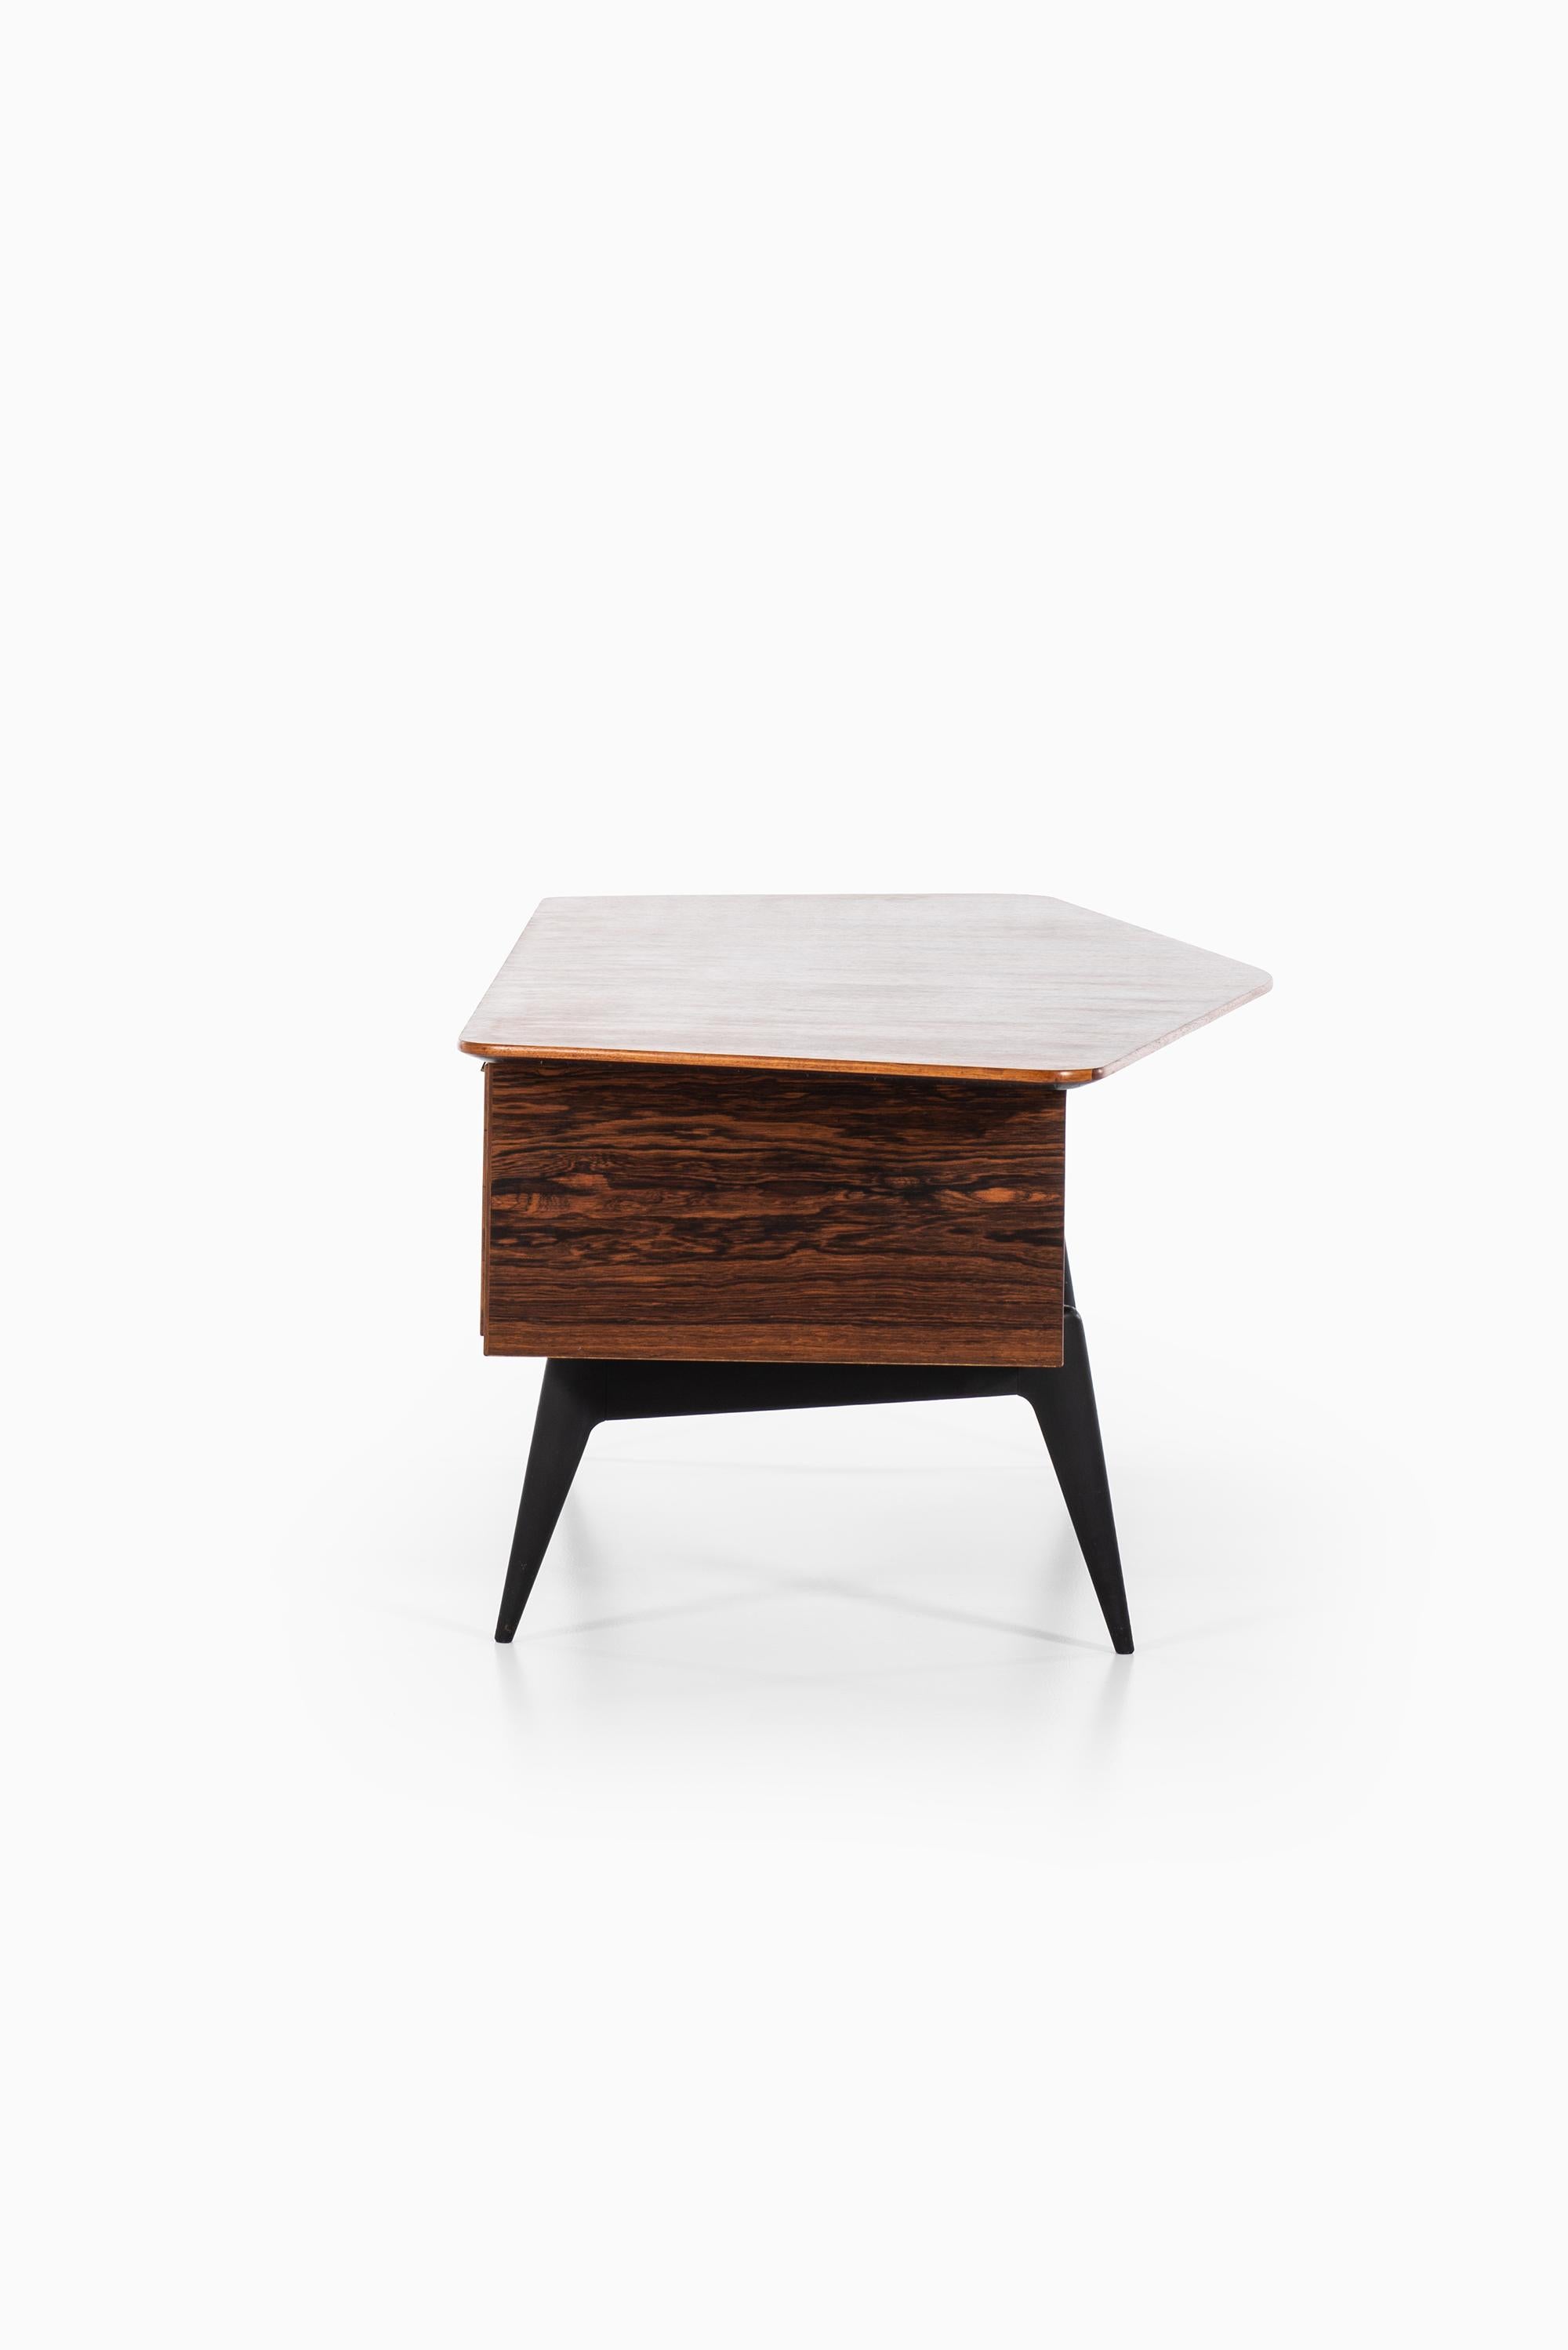 Hadar Schmidt Desk in Rosewood Produced by Hadar Schmidt in Sweden For Sale 1